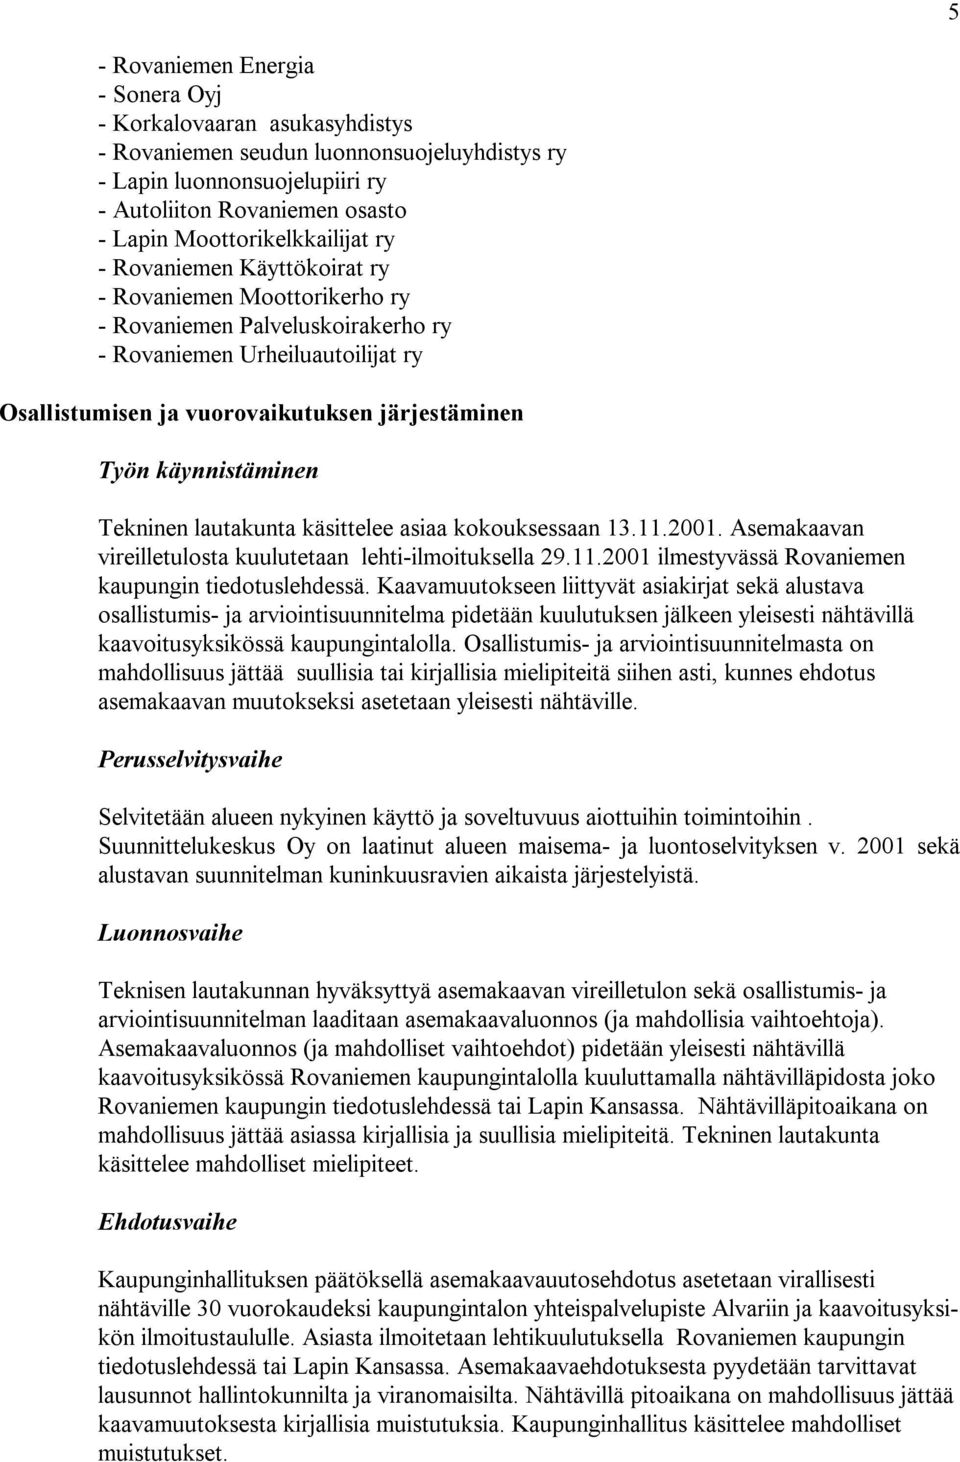 järjestäminen Työn käynnistäminen Tekninen lautakunta käsittelee asiaa kokouksessaan 13.11.2001. Asemakaavan vireilletulosta kuulutetaan lehti-ilmoituksella 29.11.2001 ilmestyvässä Rovaniemen kaupungin tiedotuslehdessä.